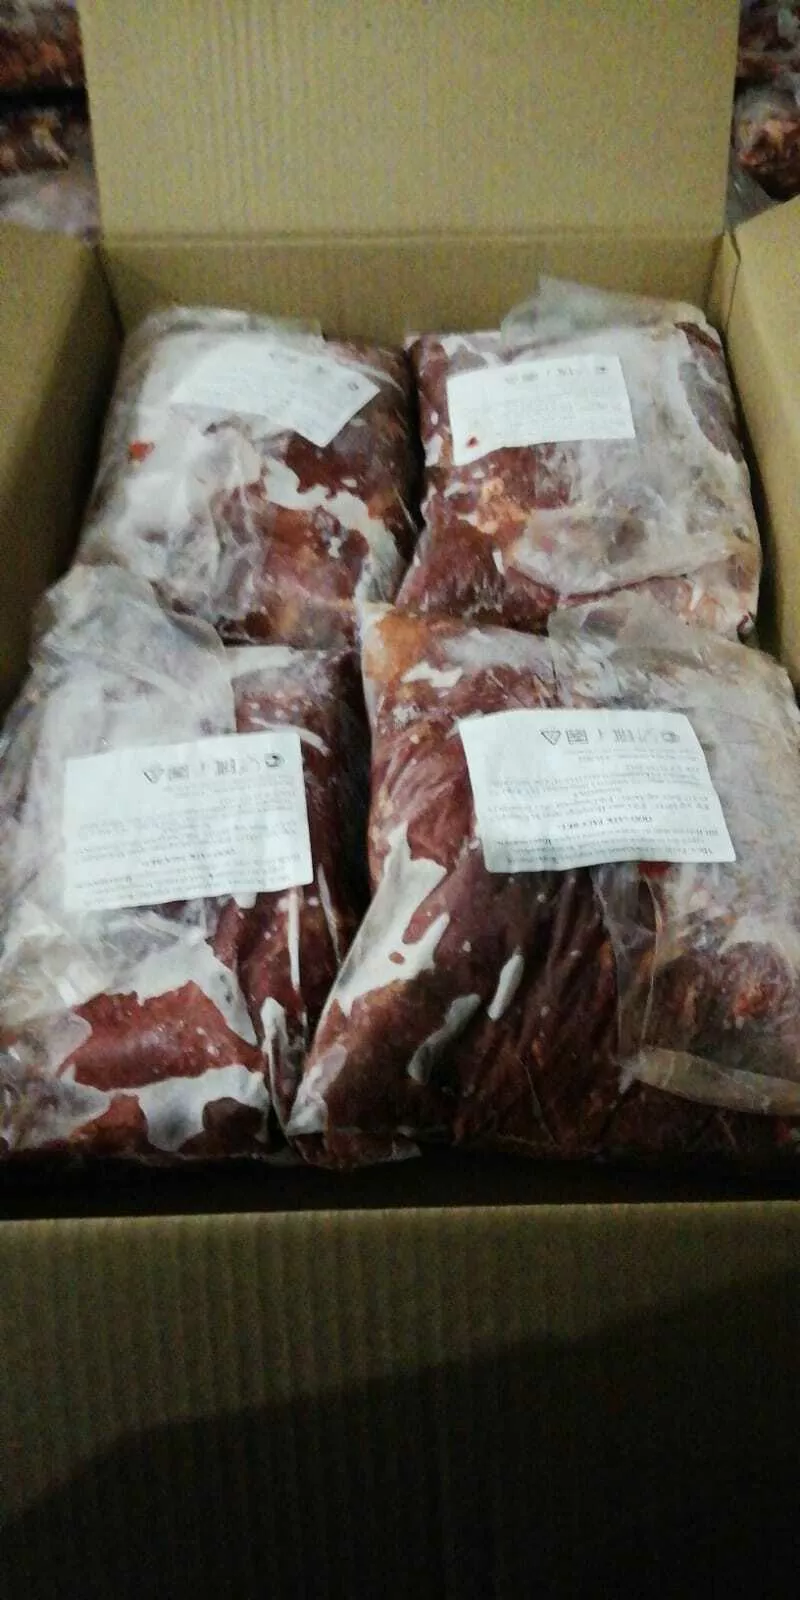 мясо говядины, телятины в Самаре и Самарской области 5